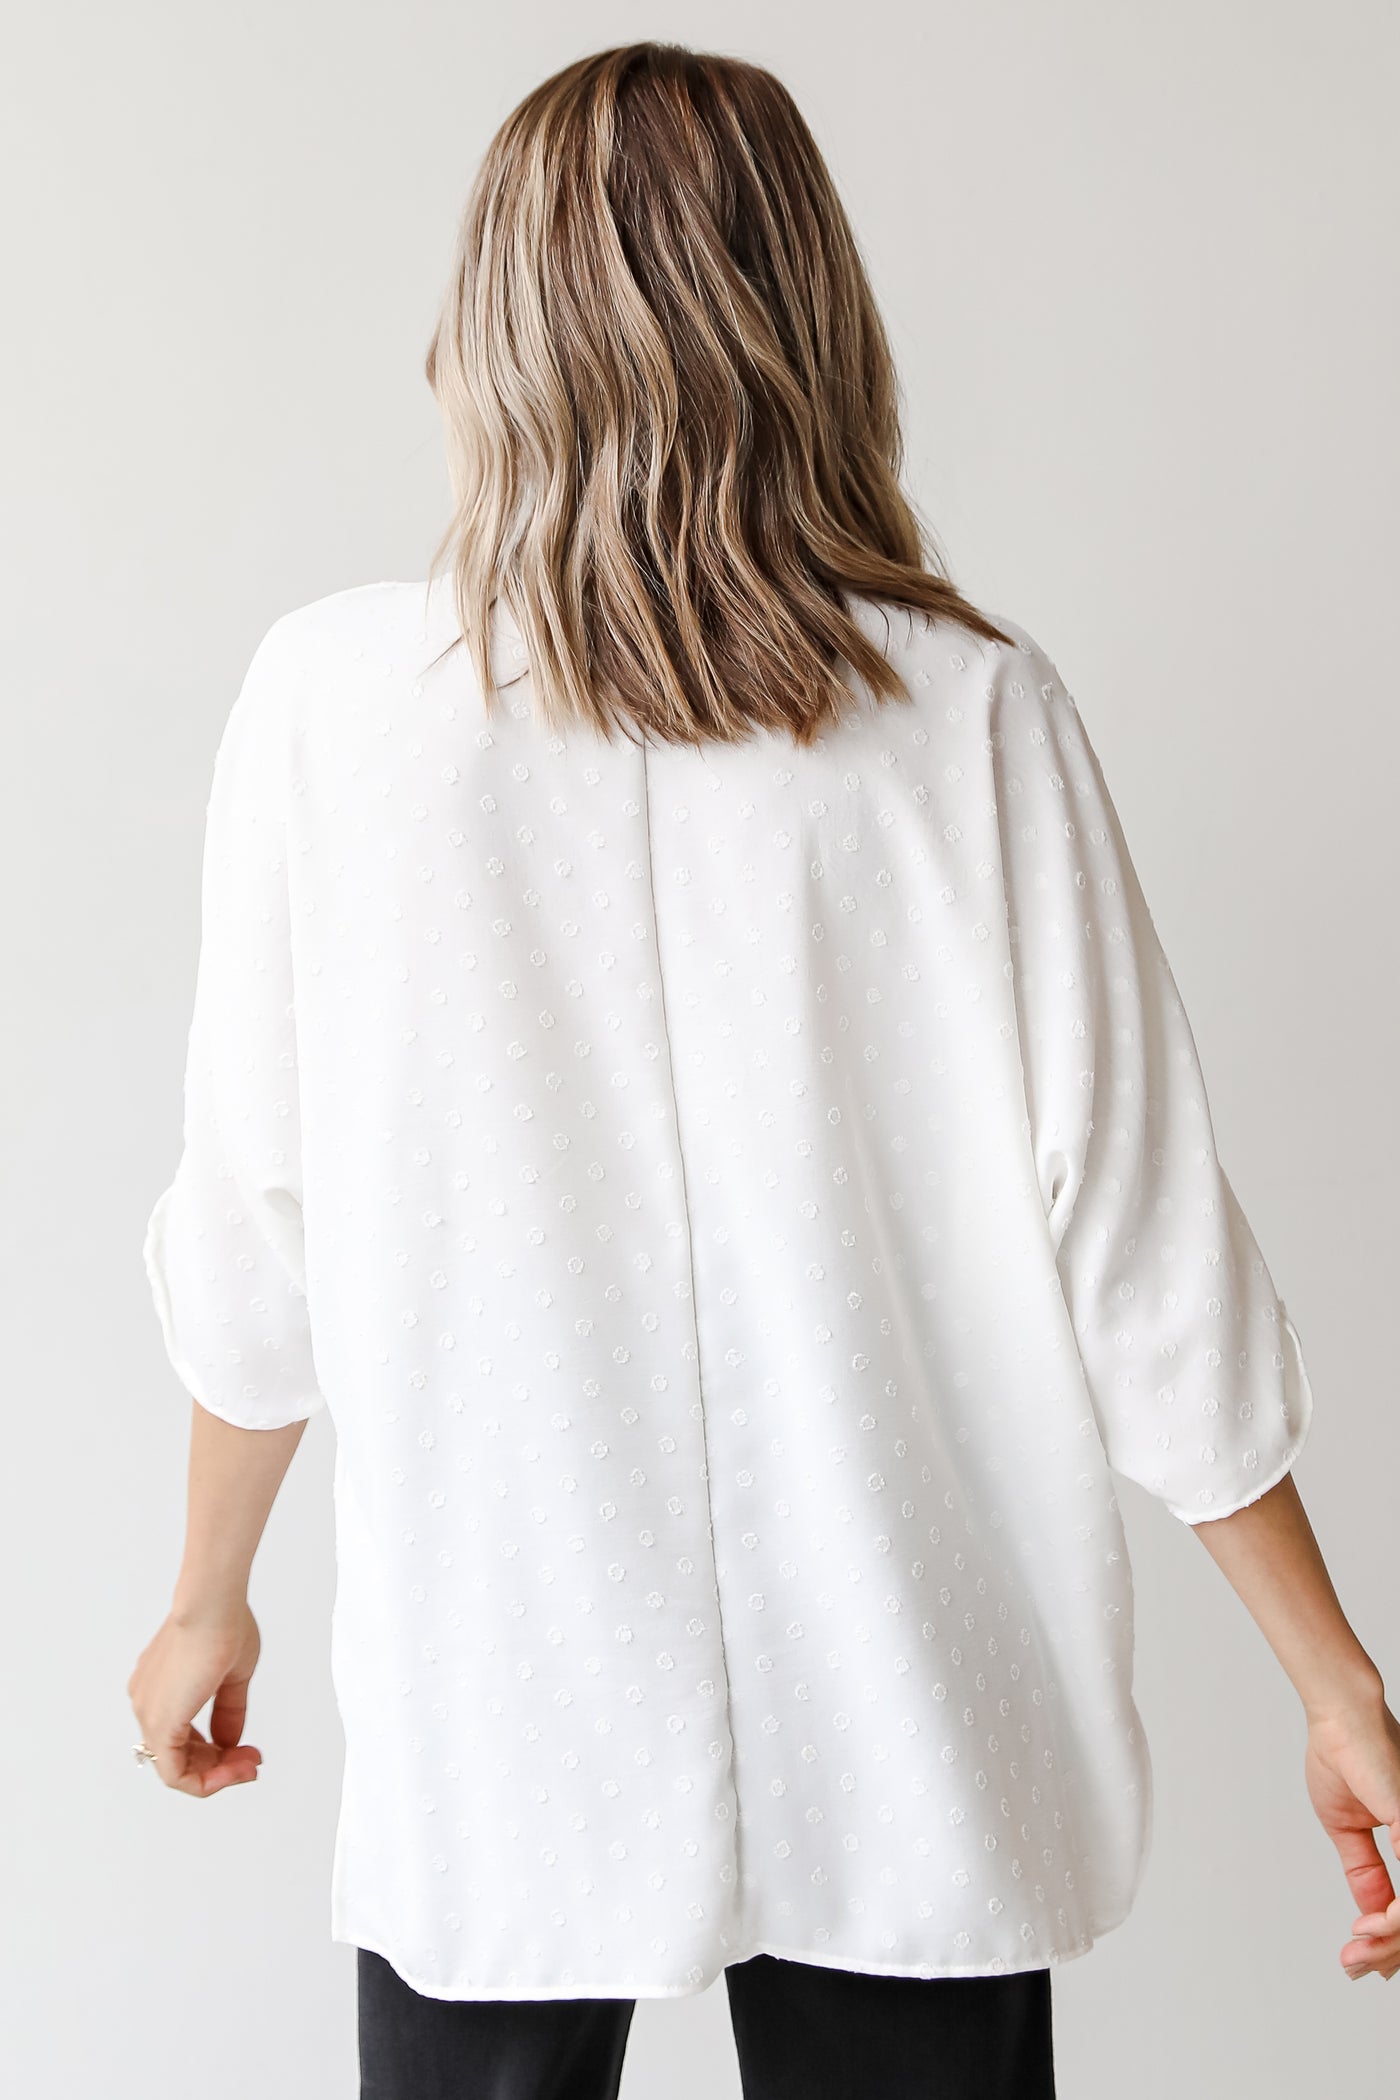 white swiss dot blouse back view